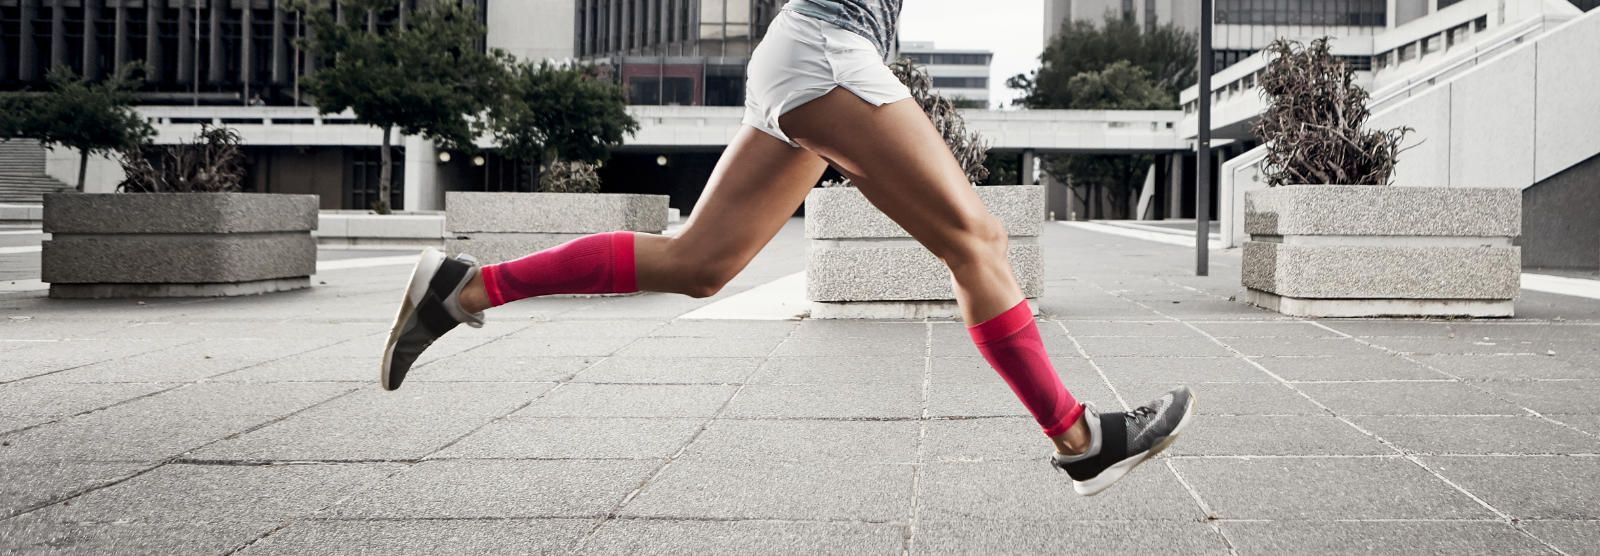 Frau mit pinken Wadensleeves läuft schnell und mit Beinen in der Luft durch eine urbane Betonwüste